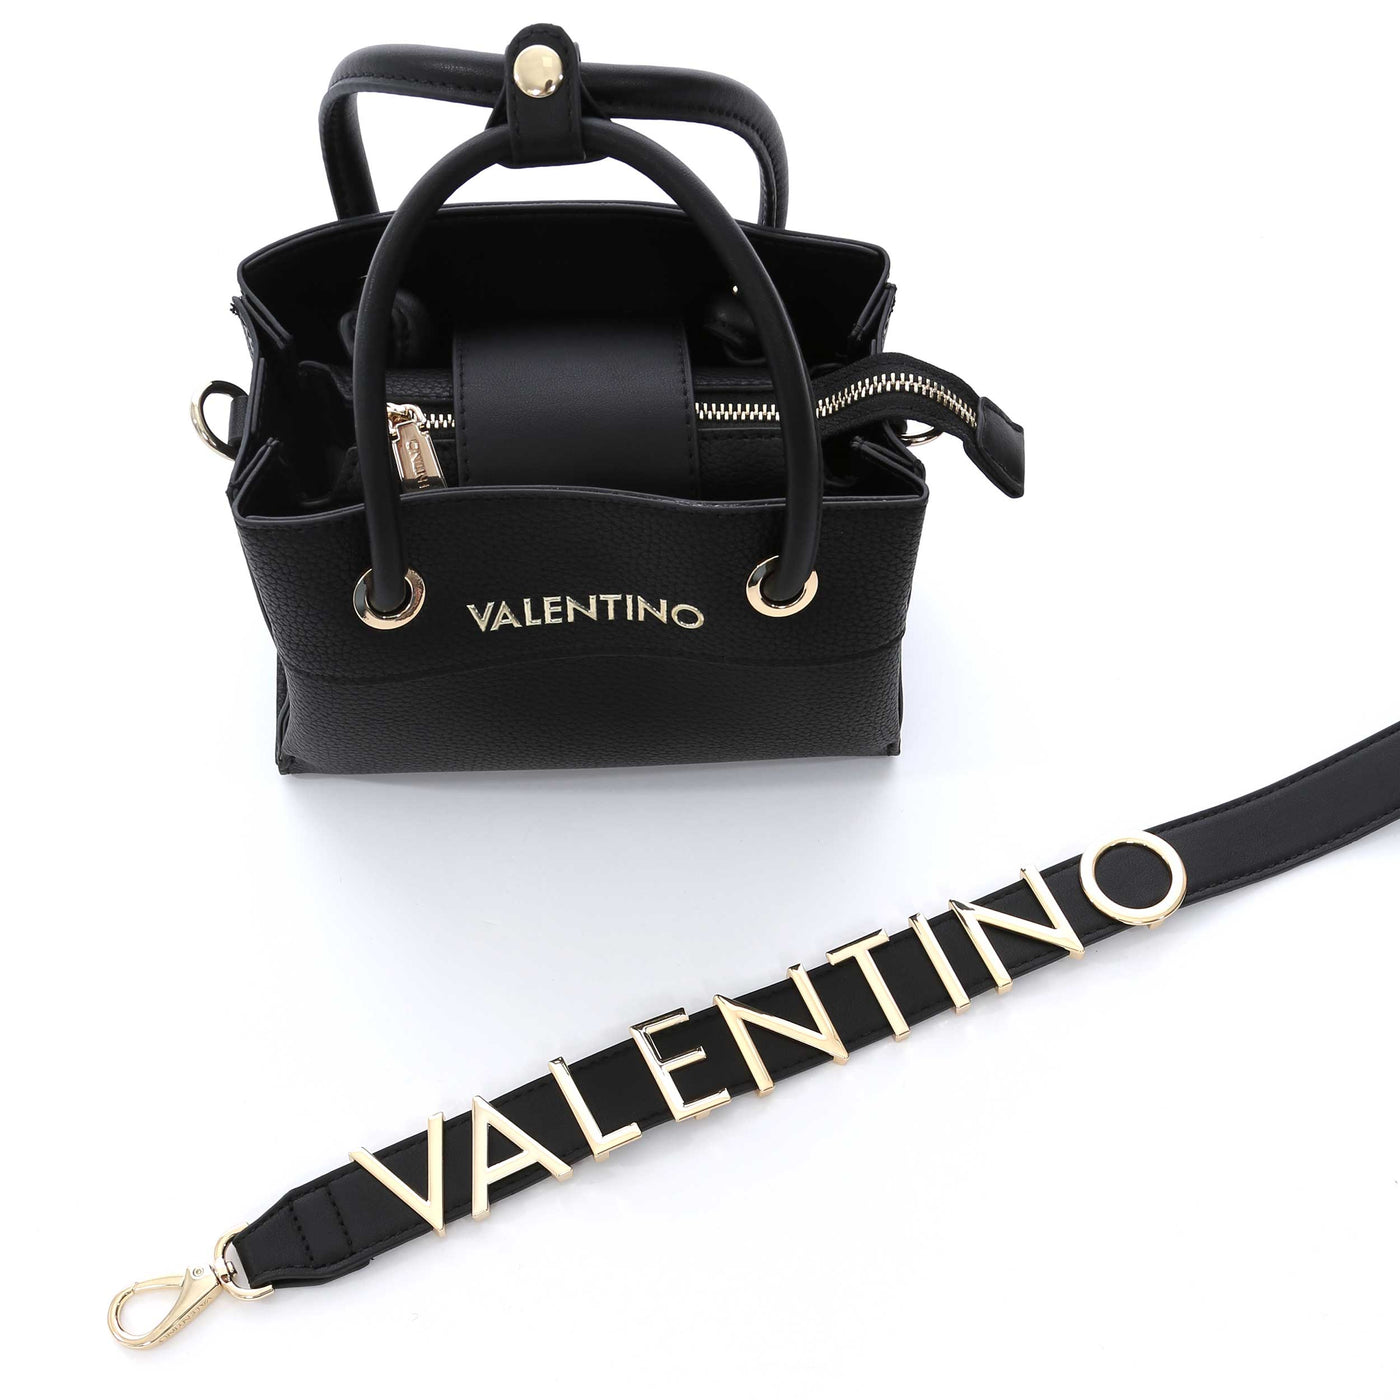 Buy Mario Valentino Alexia Crossbody Bag Online